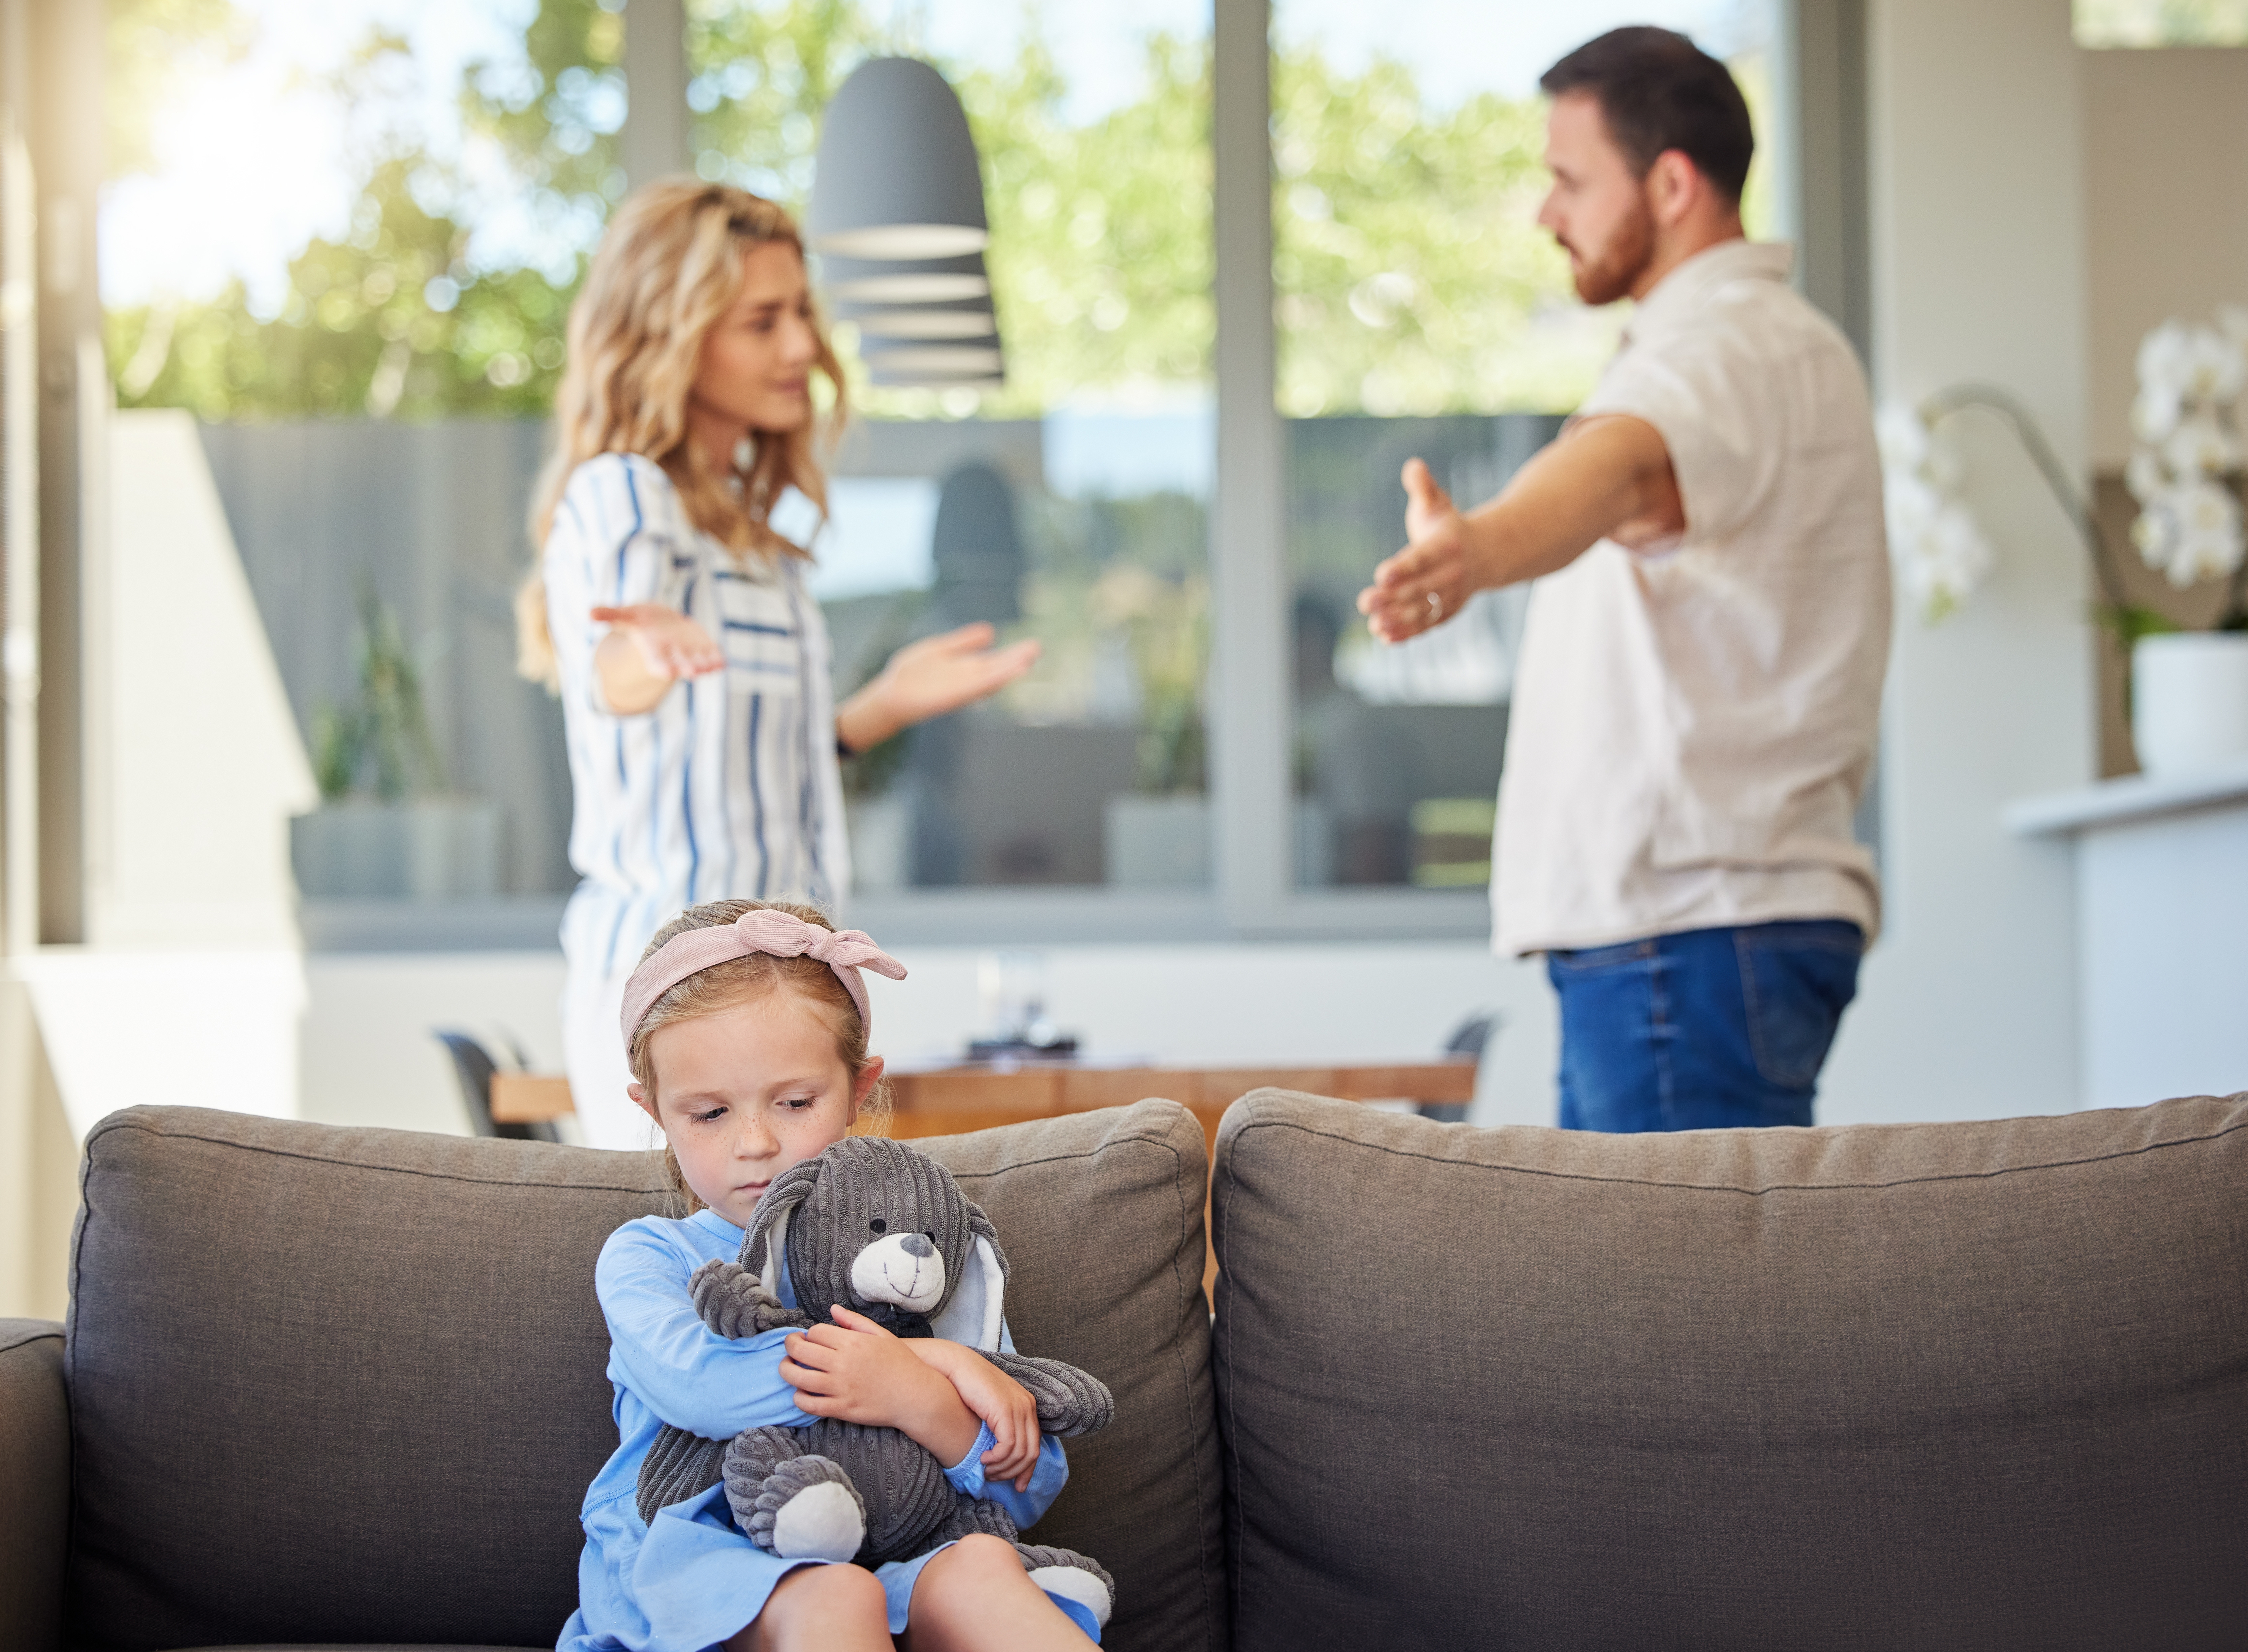 Una niña asustada que oye discutir a sus padres de fondo | Fuente: Shutterstock